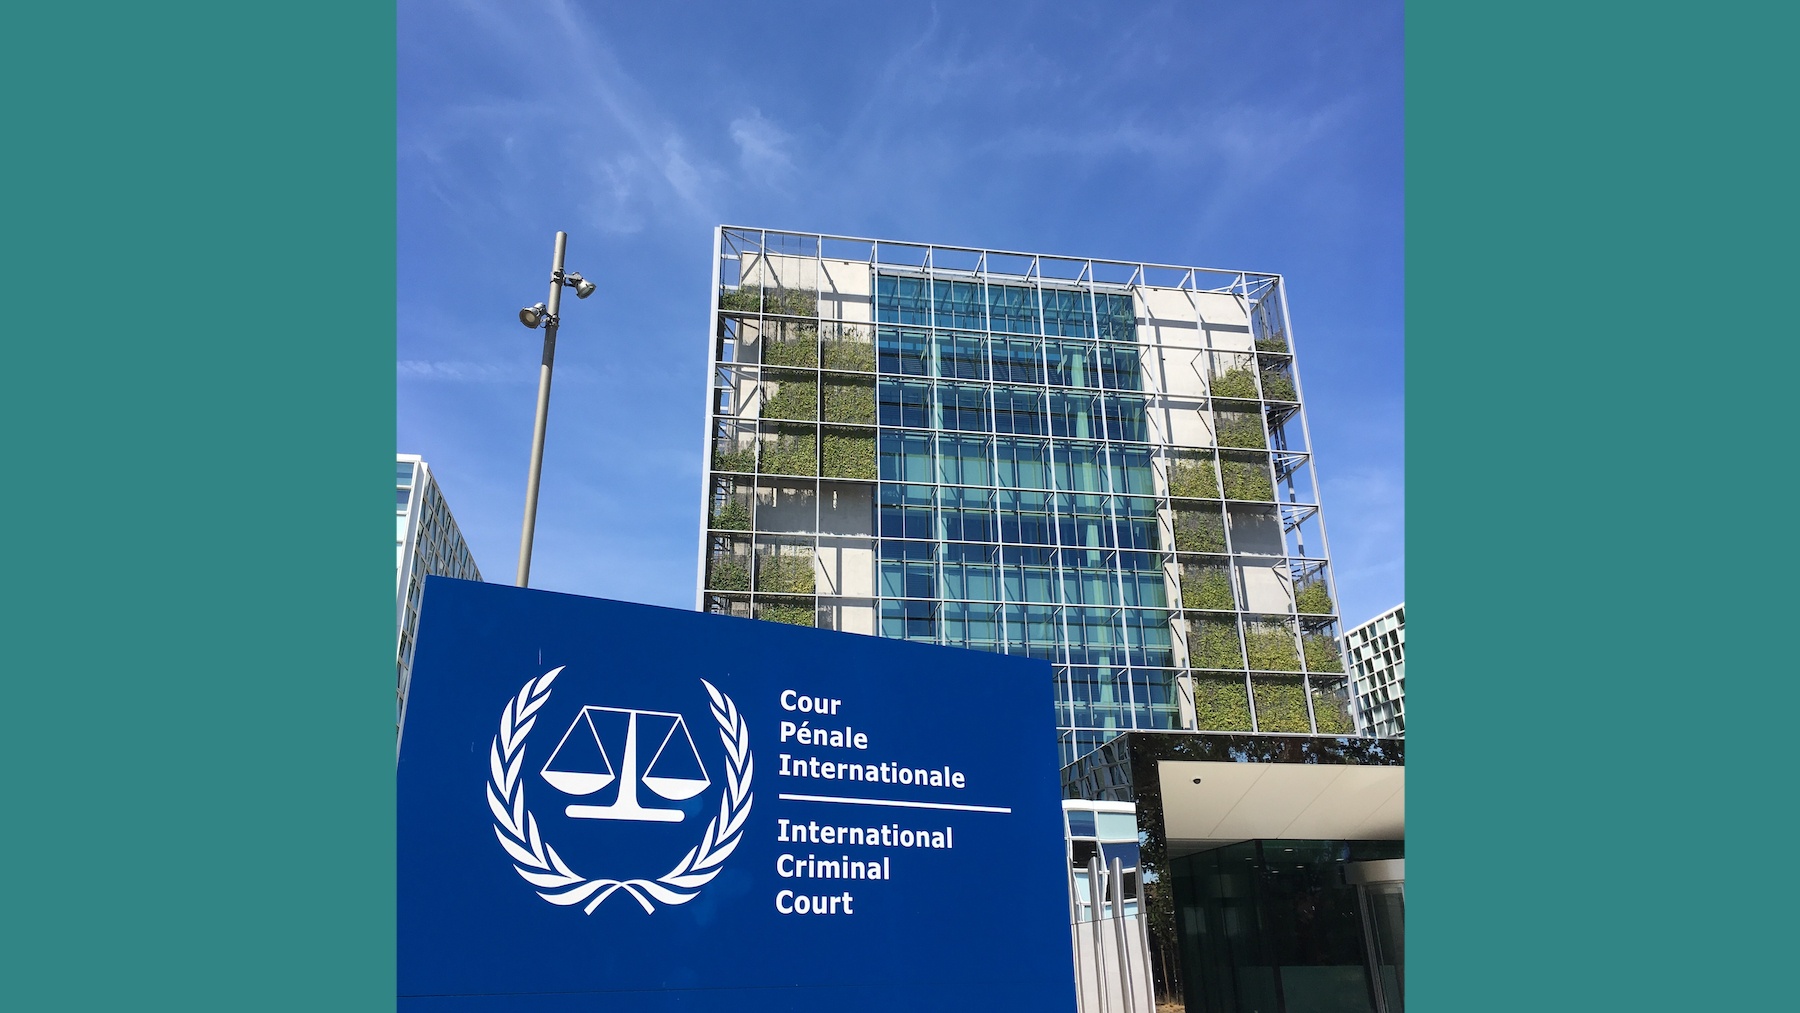 International_Criminal_Court_2018_16x9